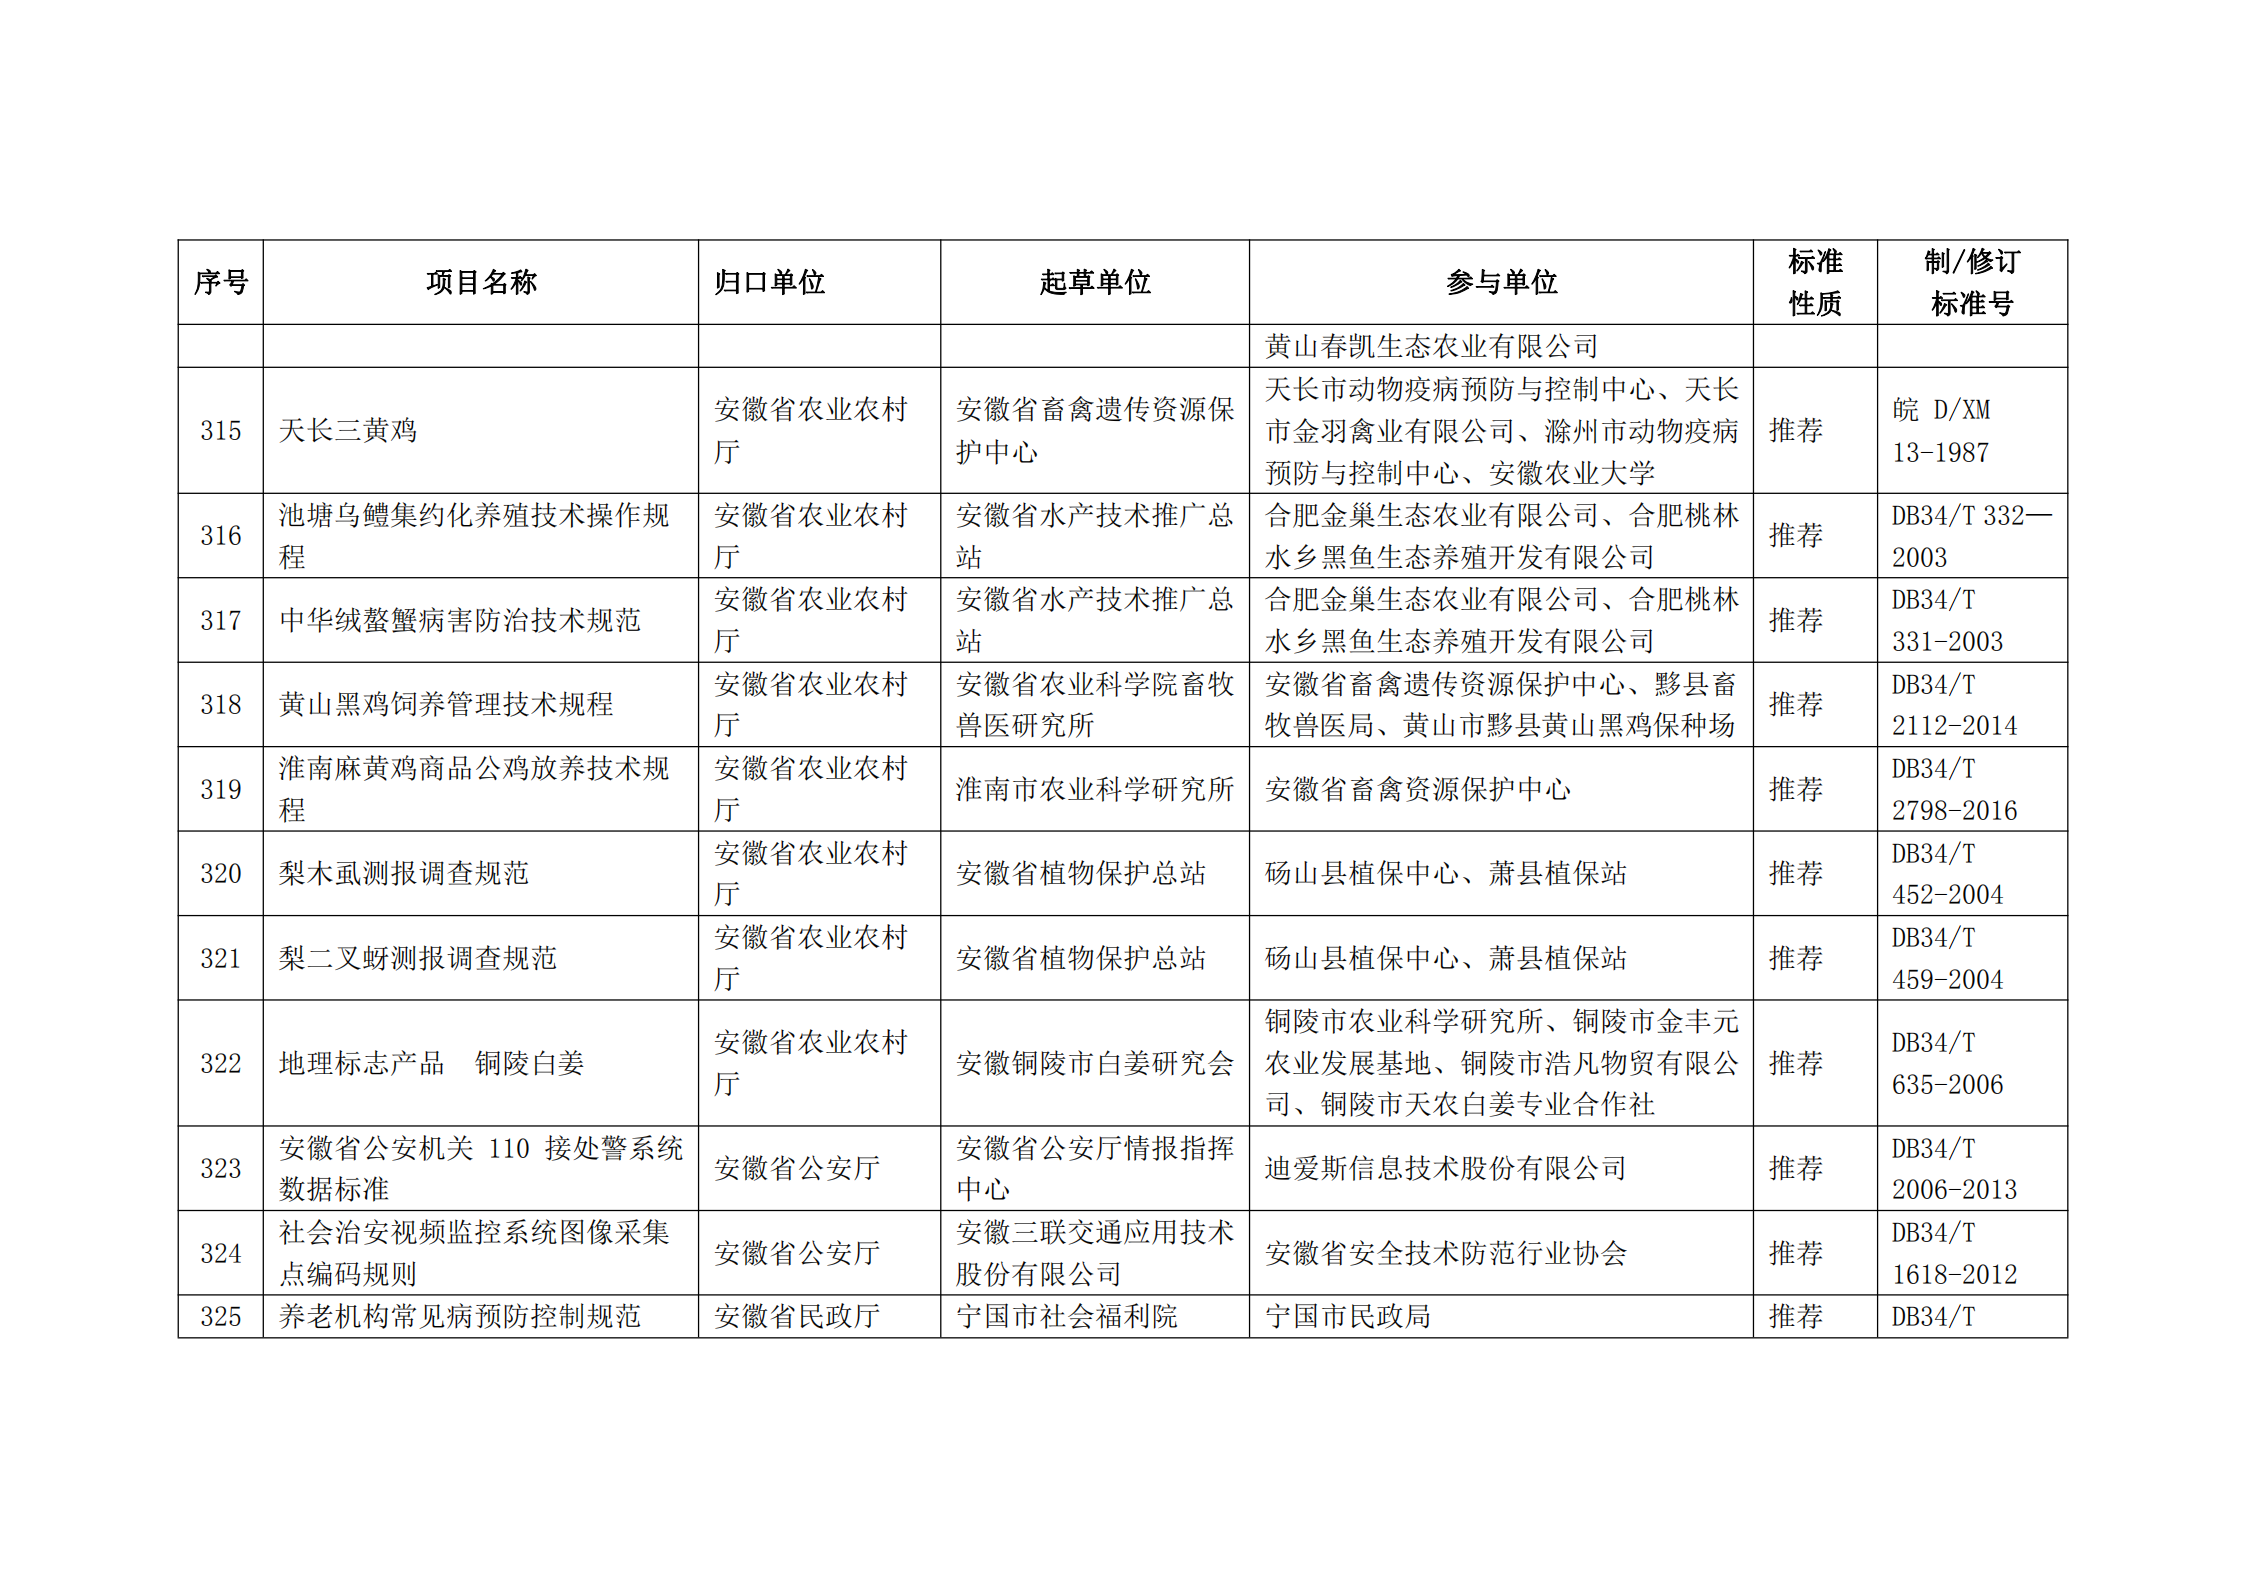 2020 年第二批安徽省地方标准制、修订计划项目汇总表(图35)